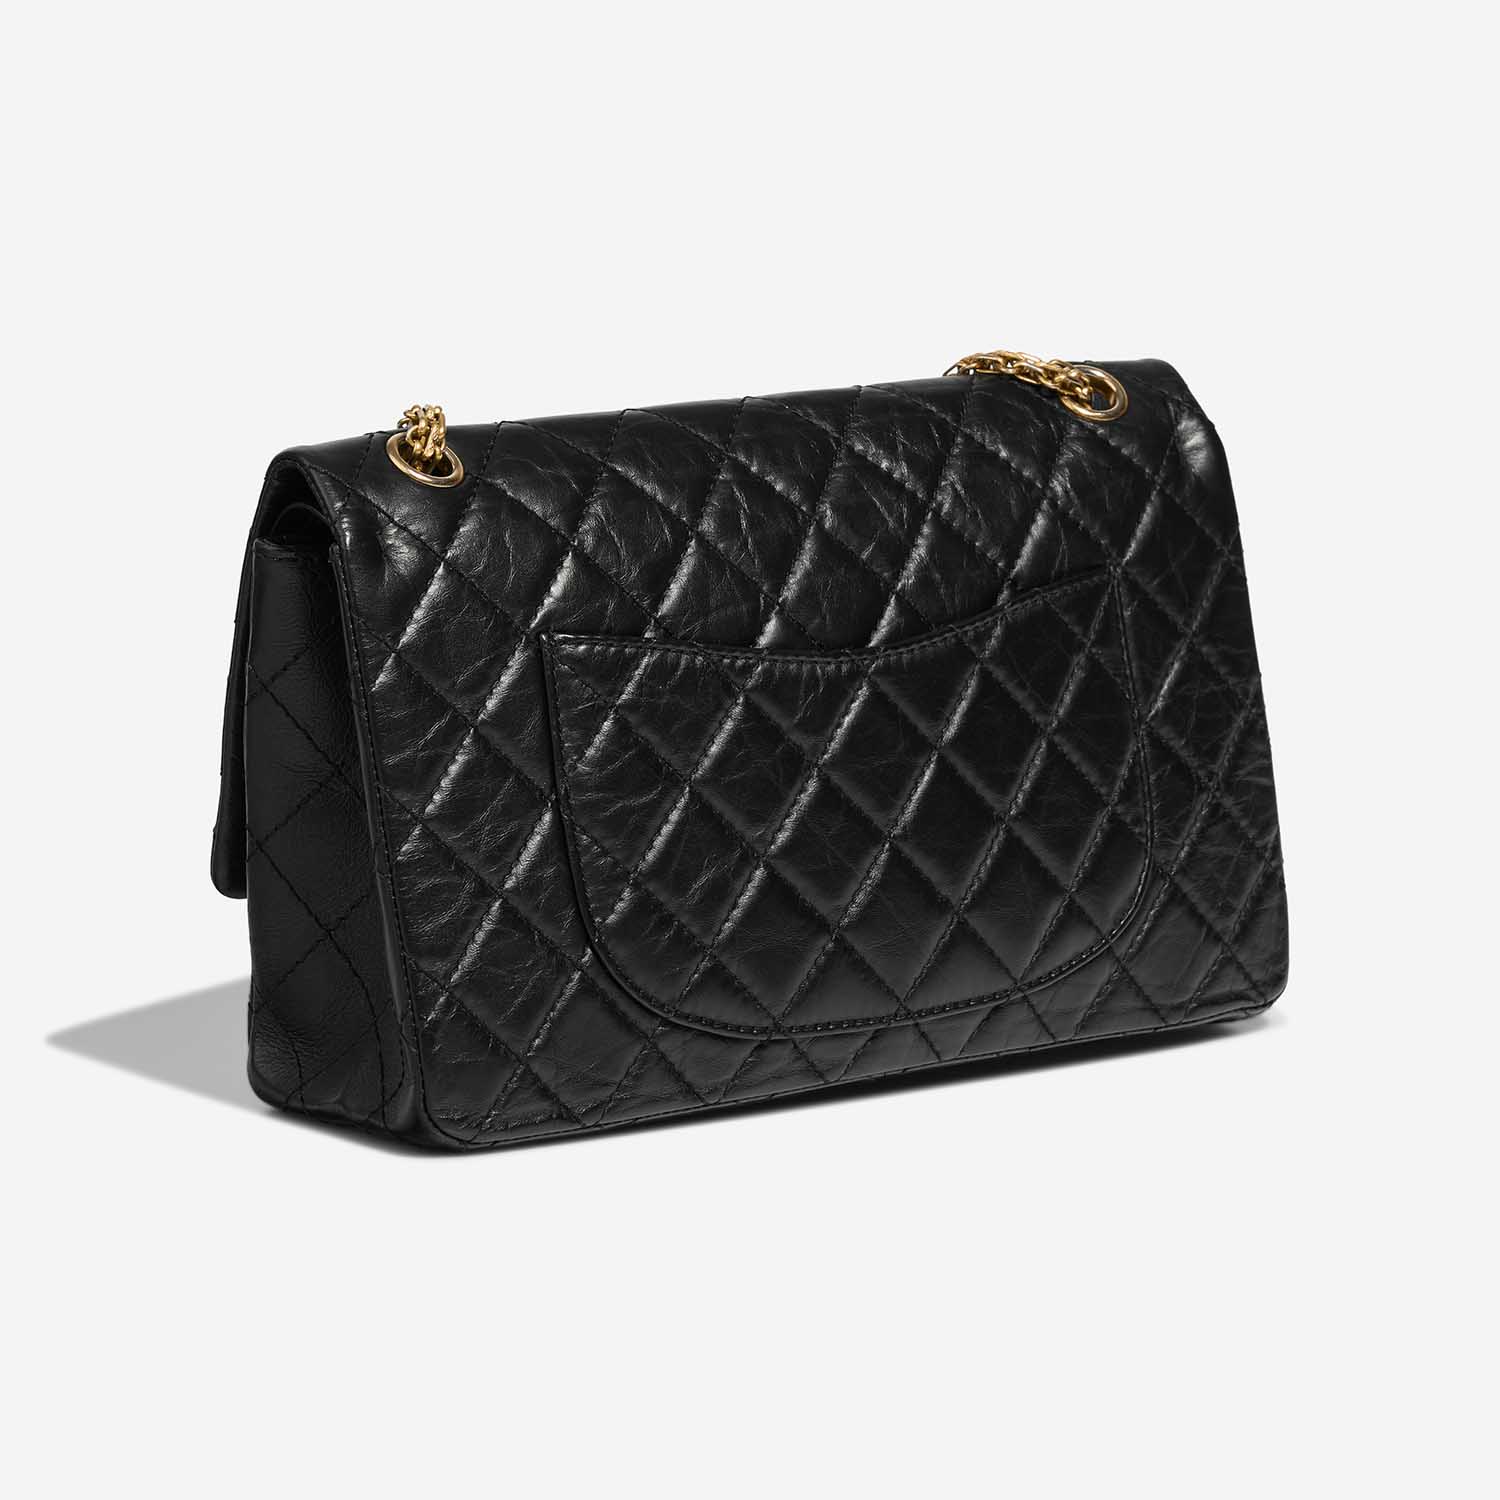 Chanel 255 226 Black Side Back | Sell your designer bag on Saclab.com